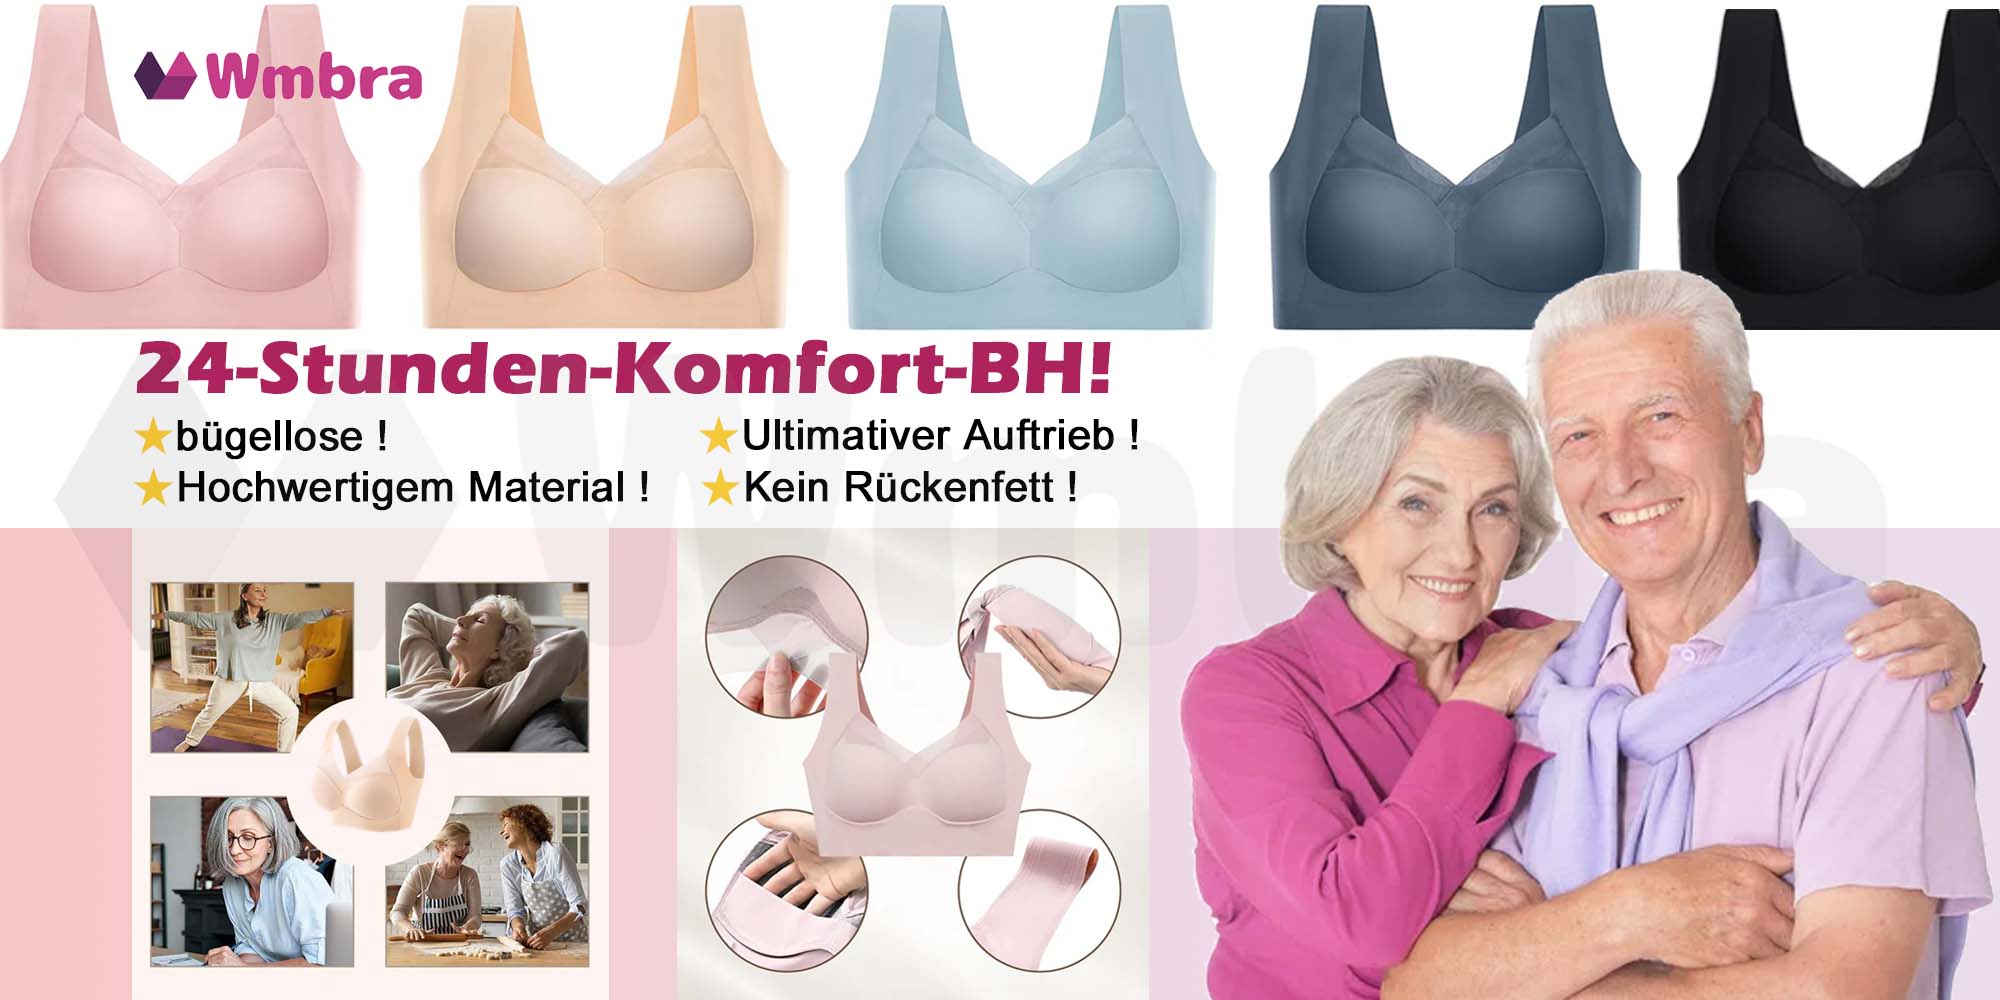 Exklusives Geheimnis - Wird dieser von einem 70-jährigen Ingenieur für ältere Frauen entworfene und in Deutschland beliebte Haltungskorrektur-BH die lang gesuchte Lösung für Frauen sein?